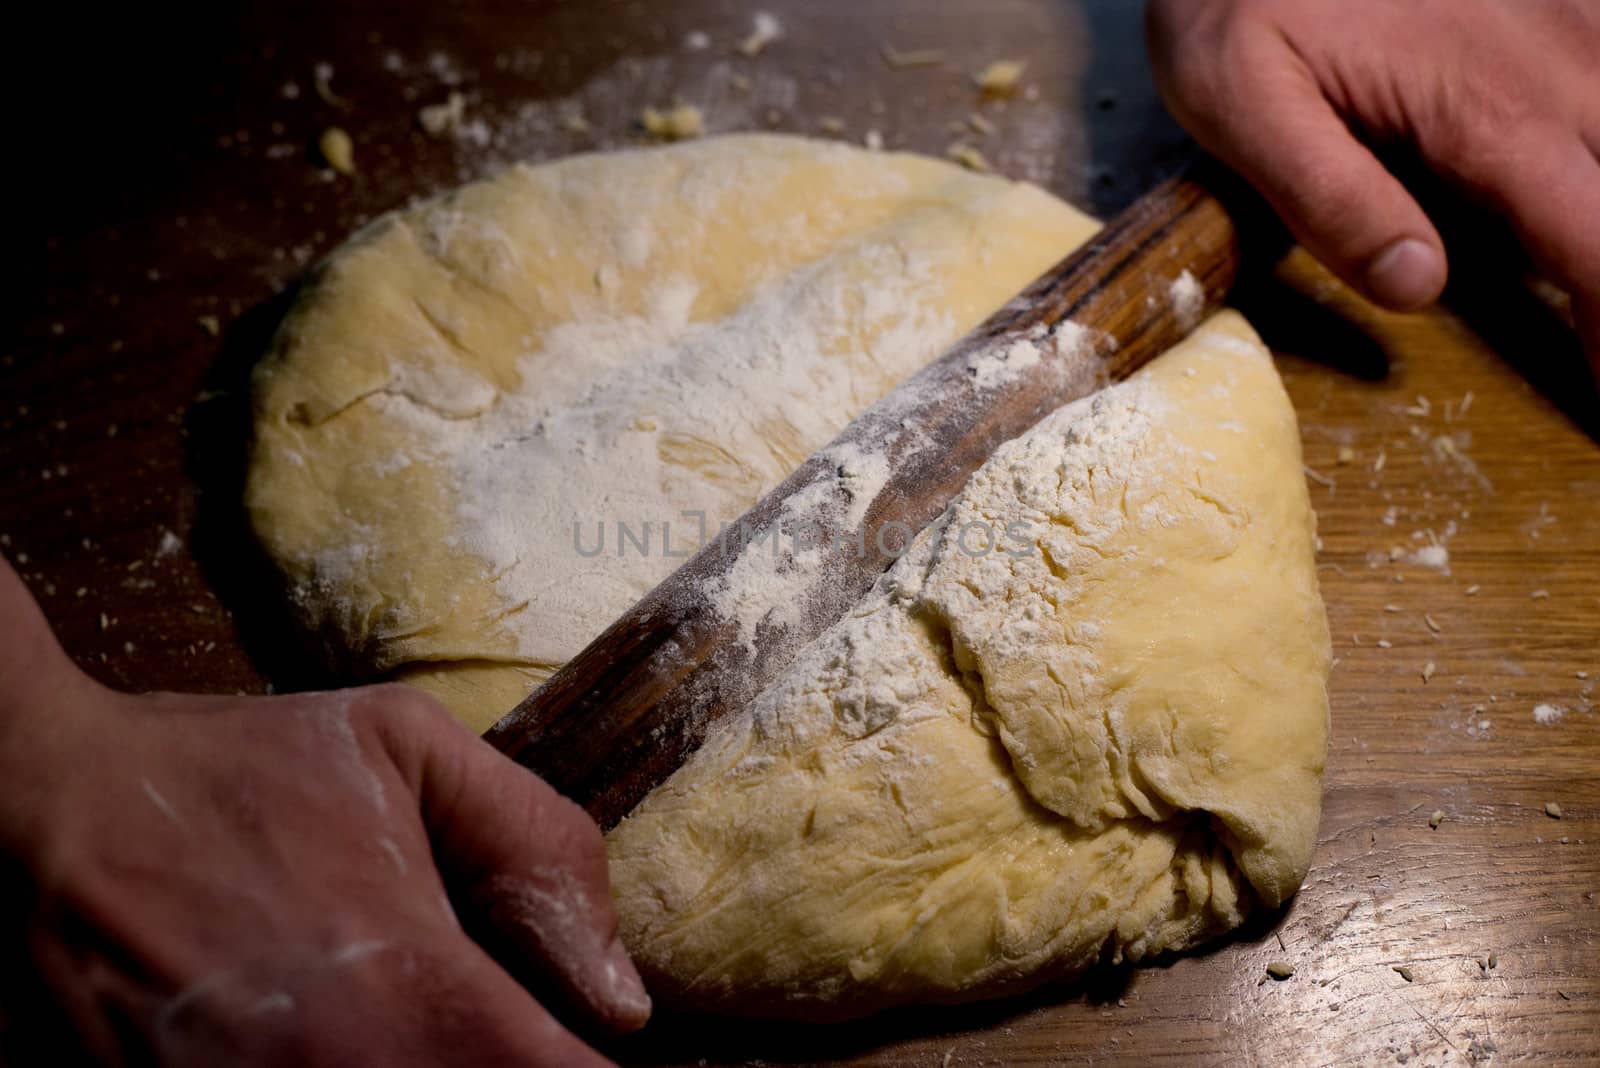 We prepare homemade dough